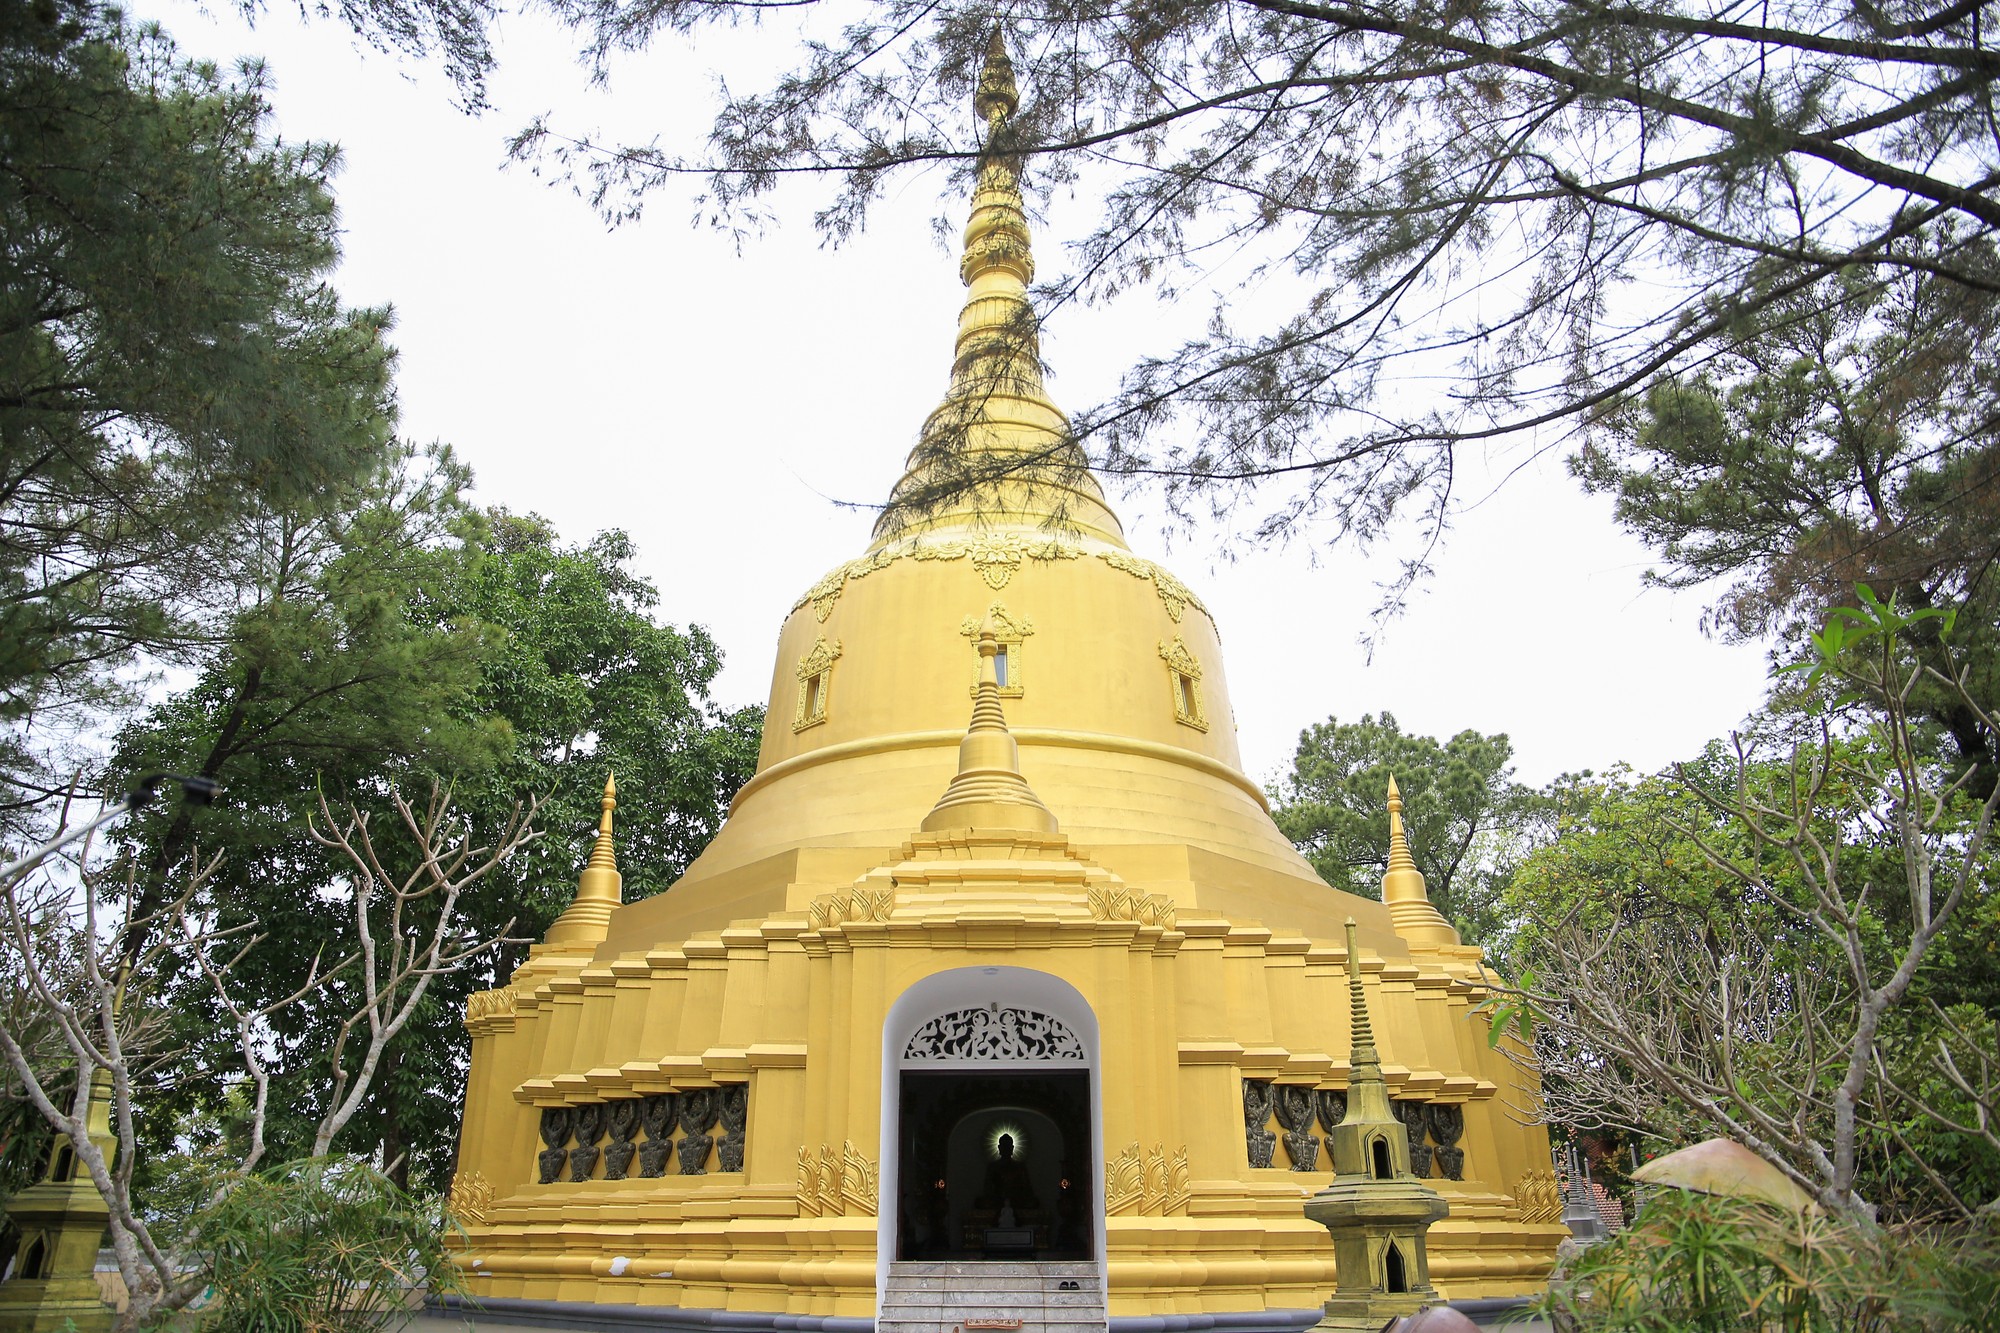 Điểm nhấn của chùa là bảo tháp Miến Điện hình chuông úp độc đáo với tông màu chủ đạo là vàng – trắng. Bảo tháp có chiều cao 15m, được mô phỏng theo kiểu chùa Sirimagala của Myanmar.